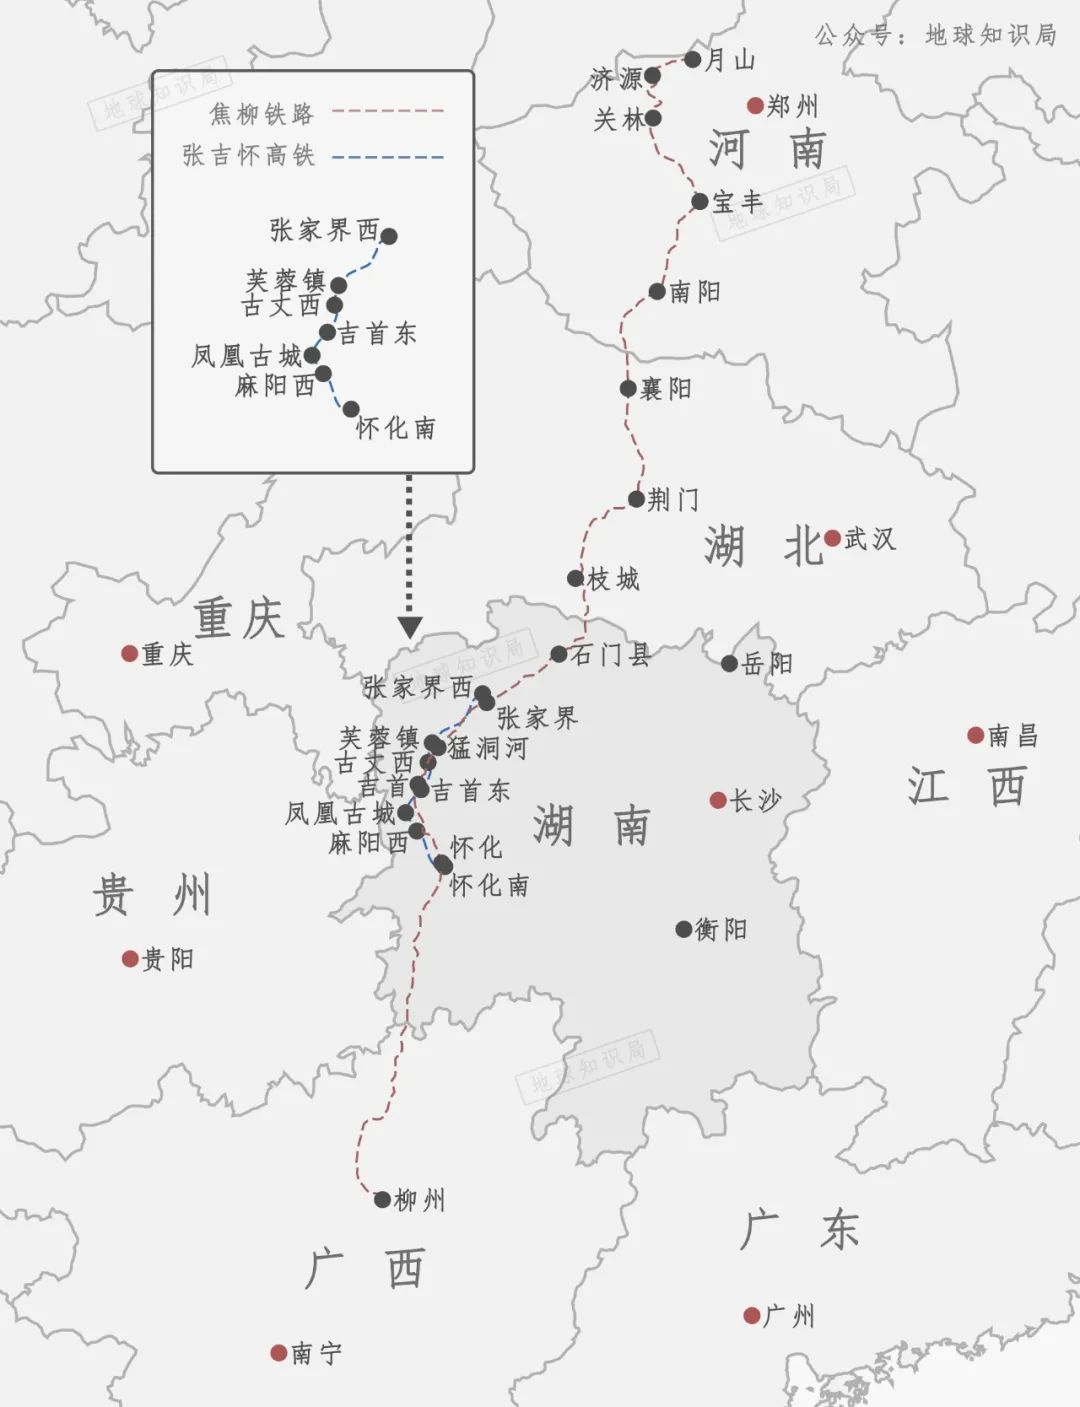 天辰注册登录刚刚 中国人在湘西深处做了一件大事